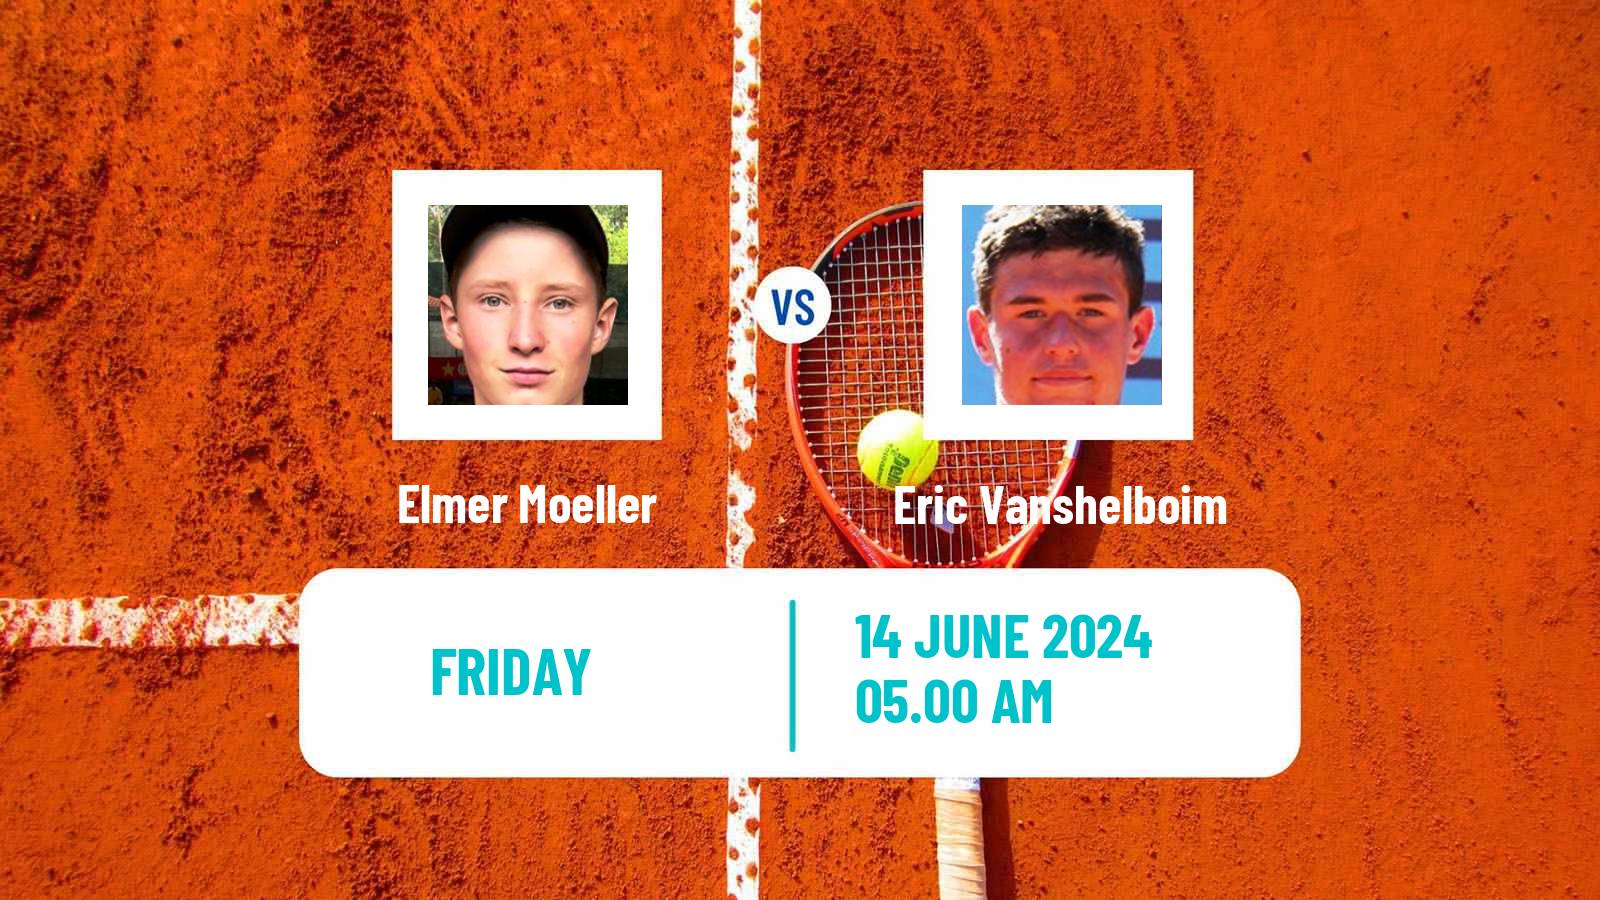 Tennis ITF M25 Aarhus Men Elmer Moeller - Eric Vanshelboim